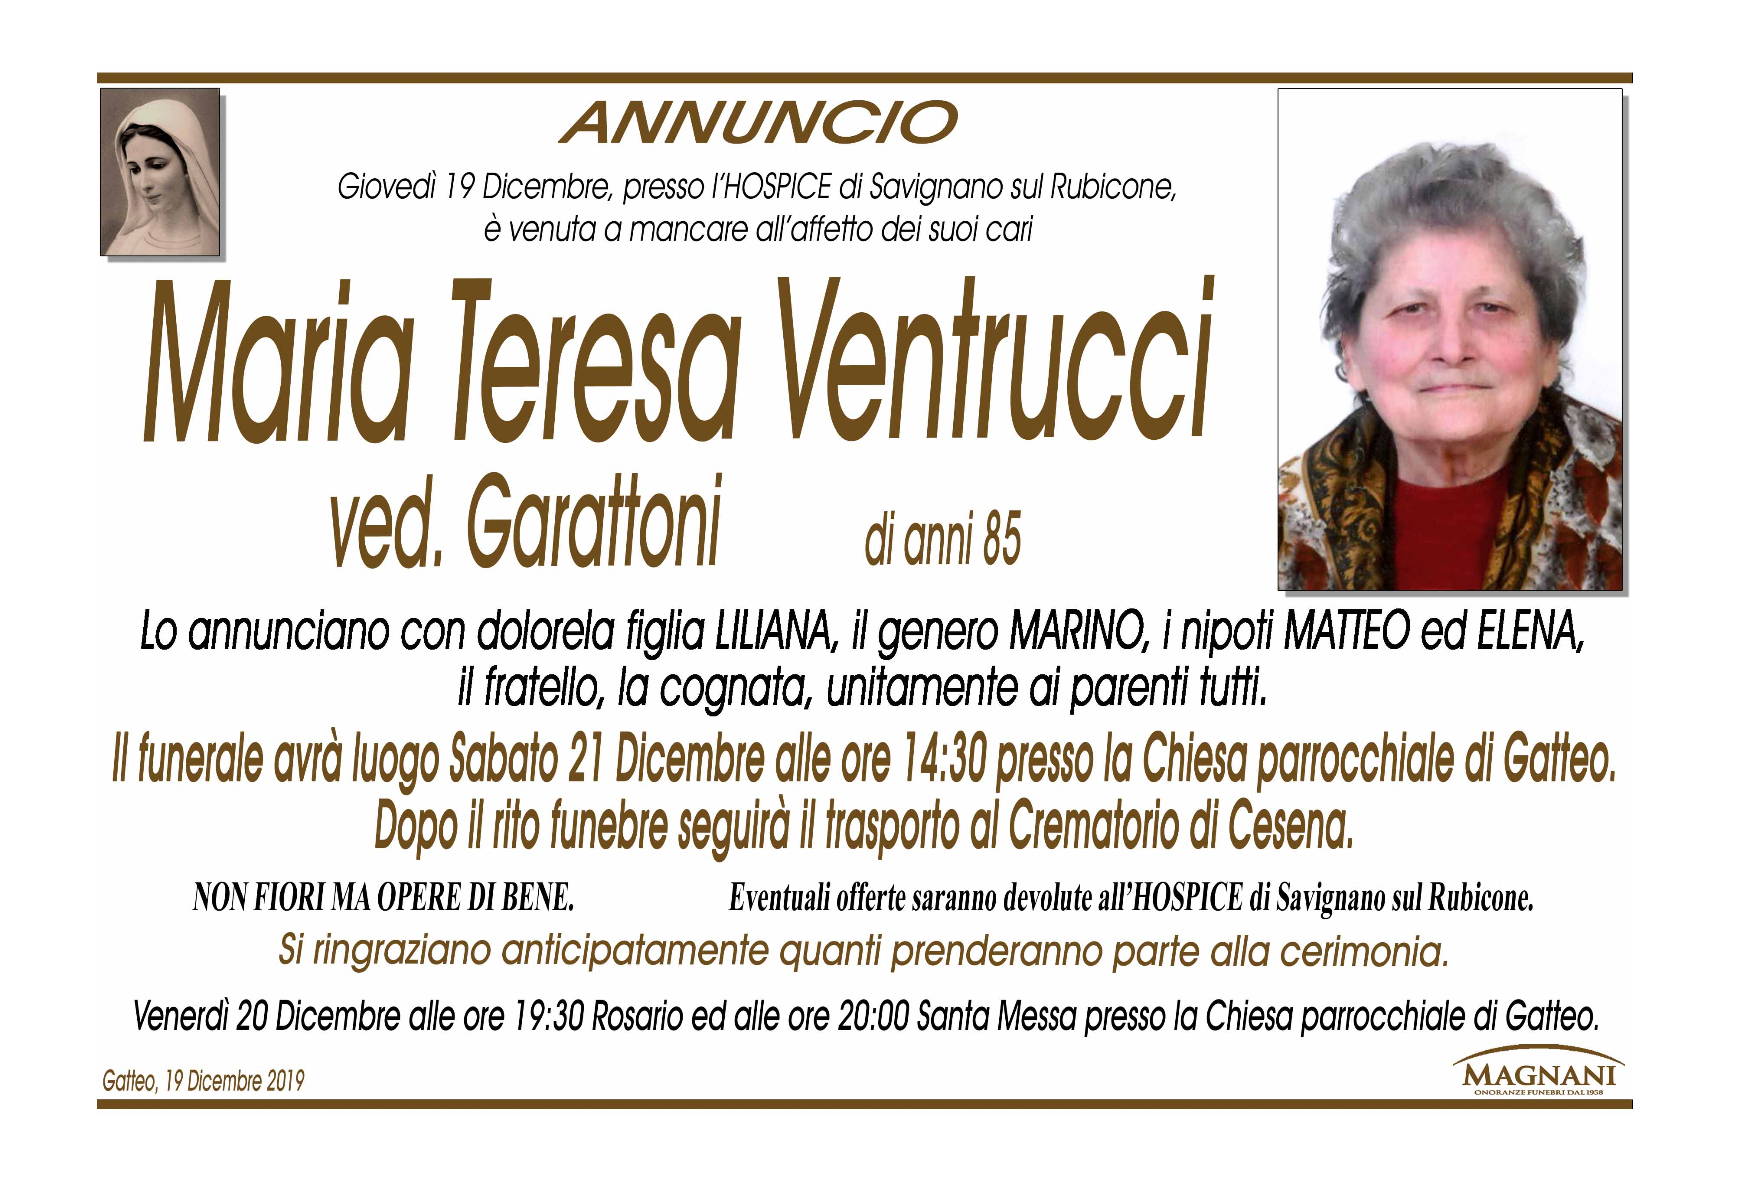 Maria Teresa Ventrucci